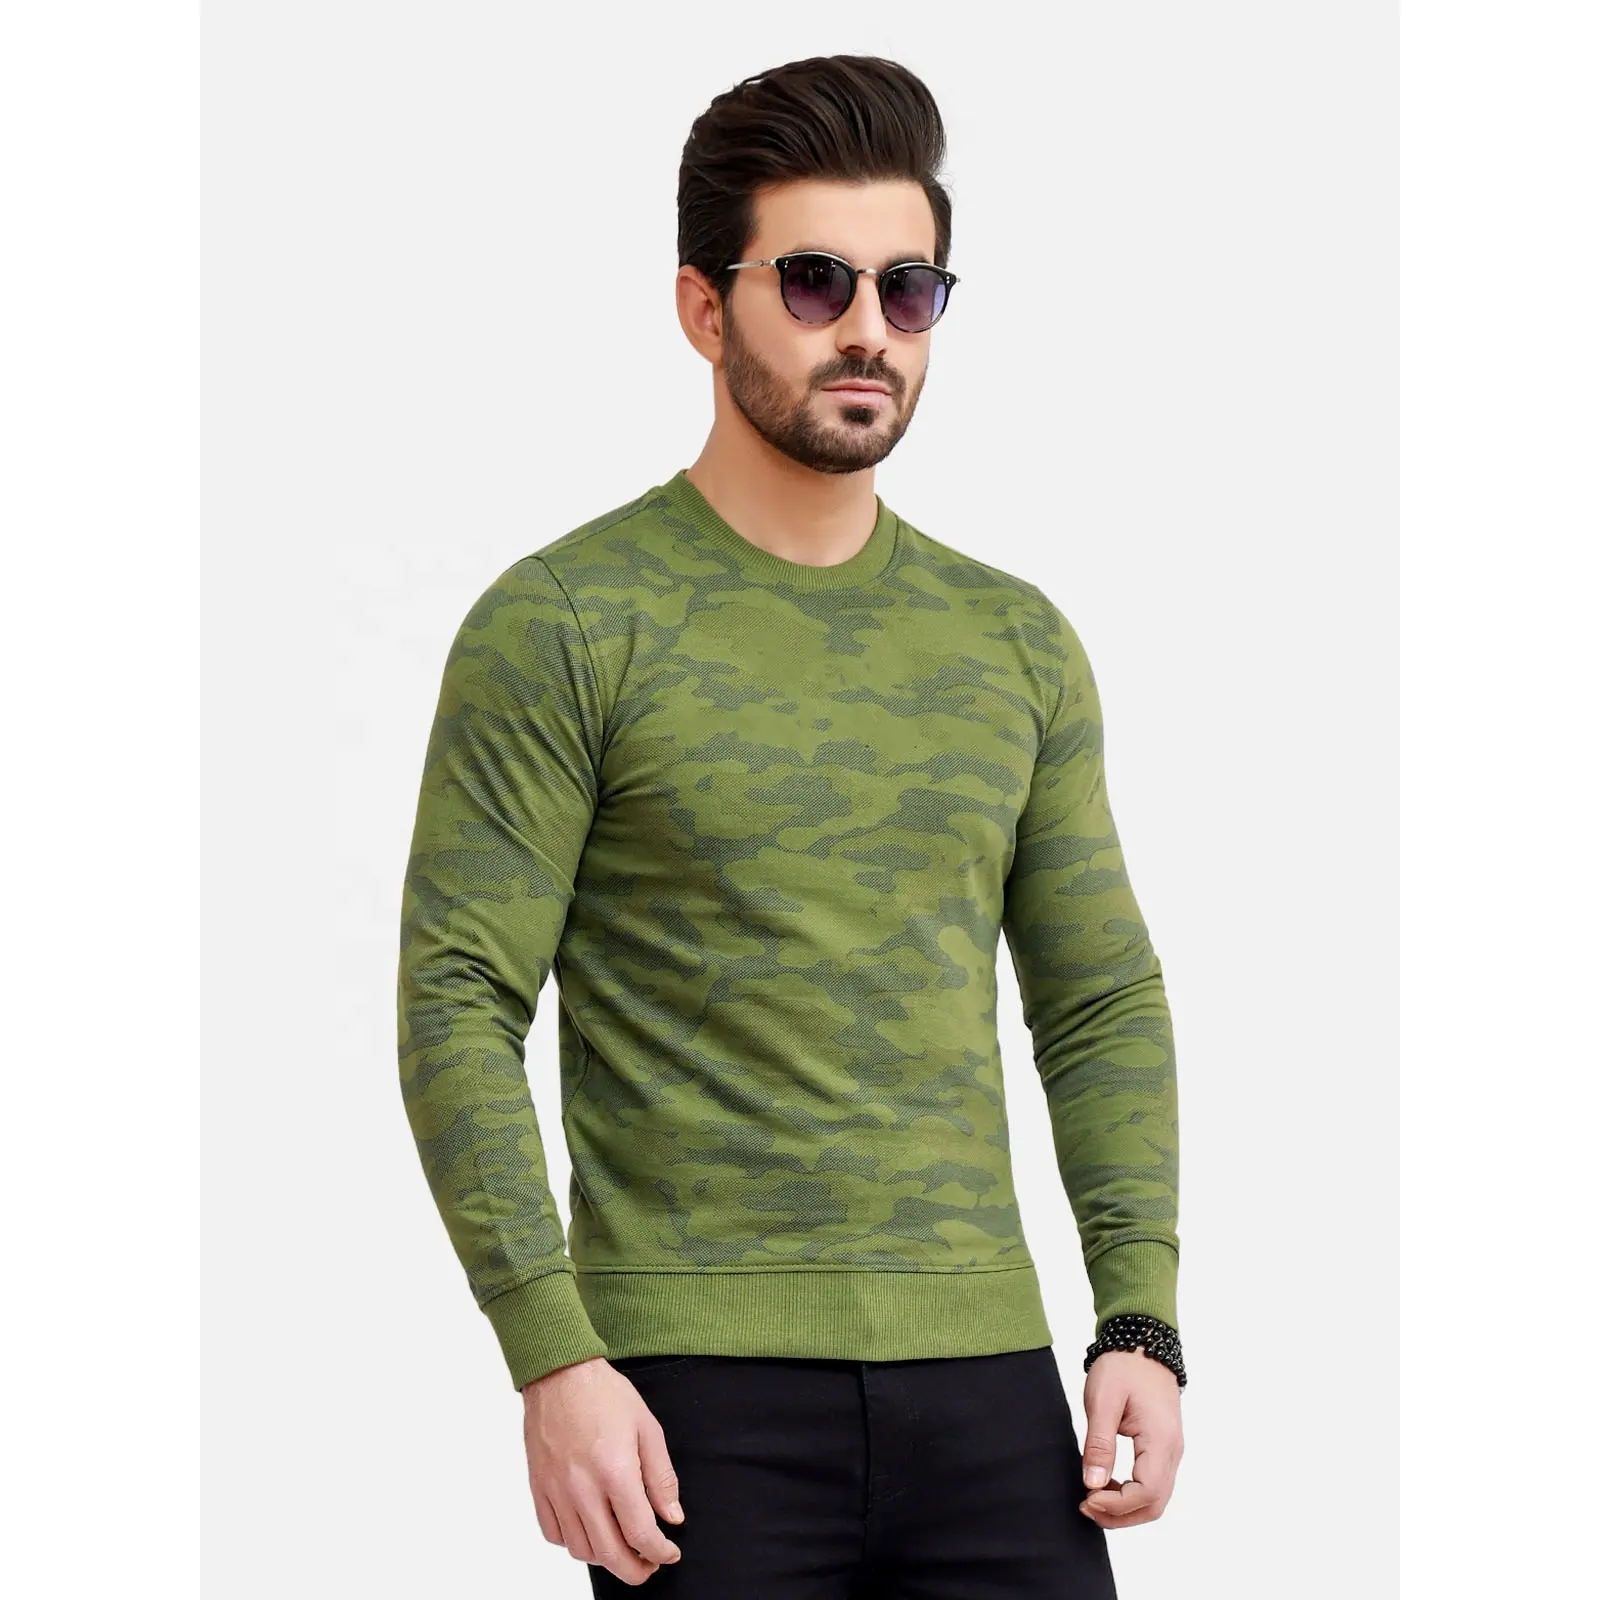 Ultimo design sweat shirt Color choice 100% cotone custom men sweat shirt all'ingrosso Pullover Oversize di alta qualità girocollo sw